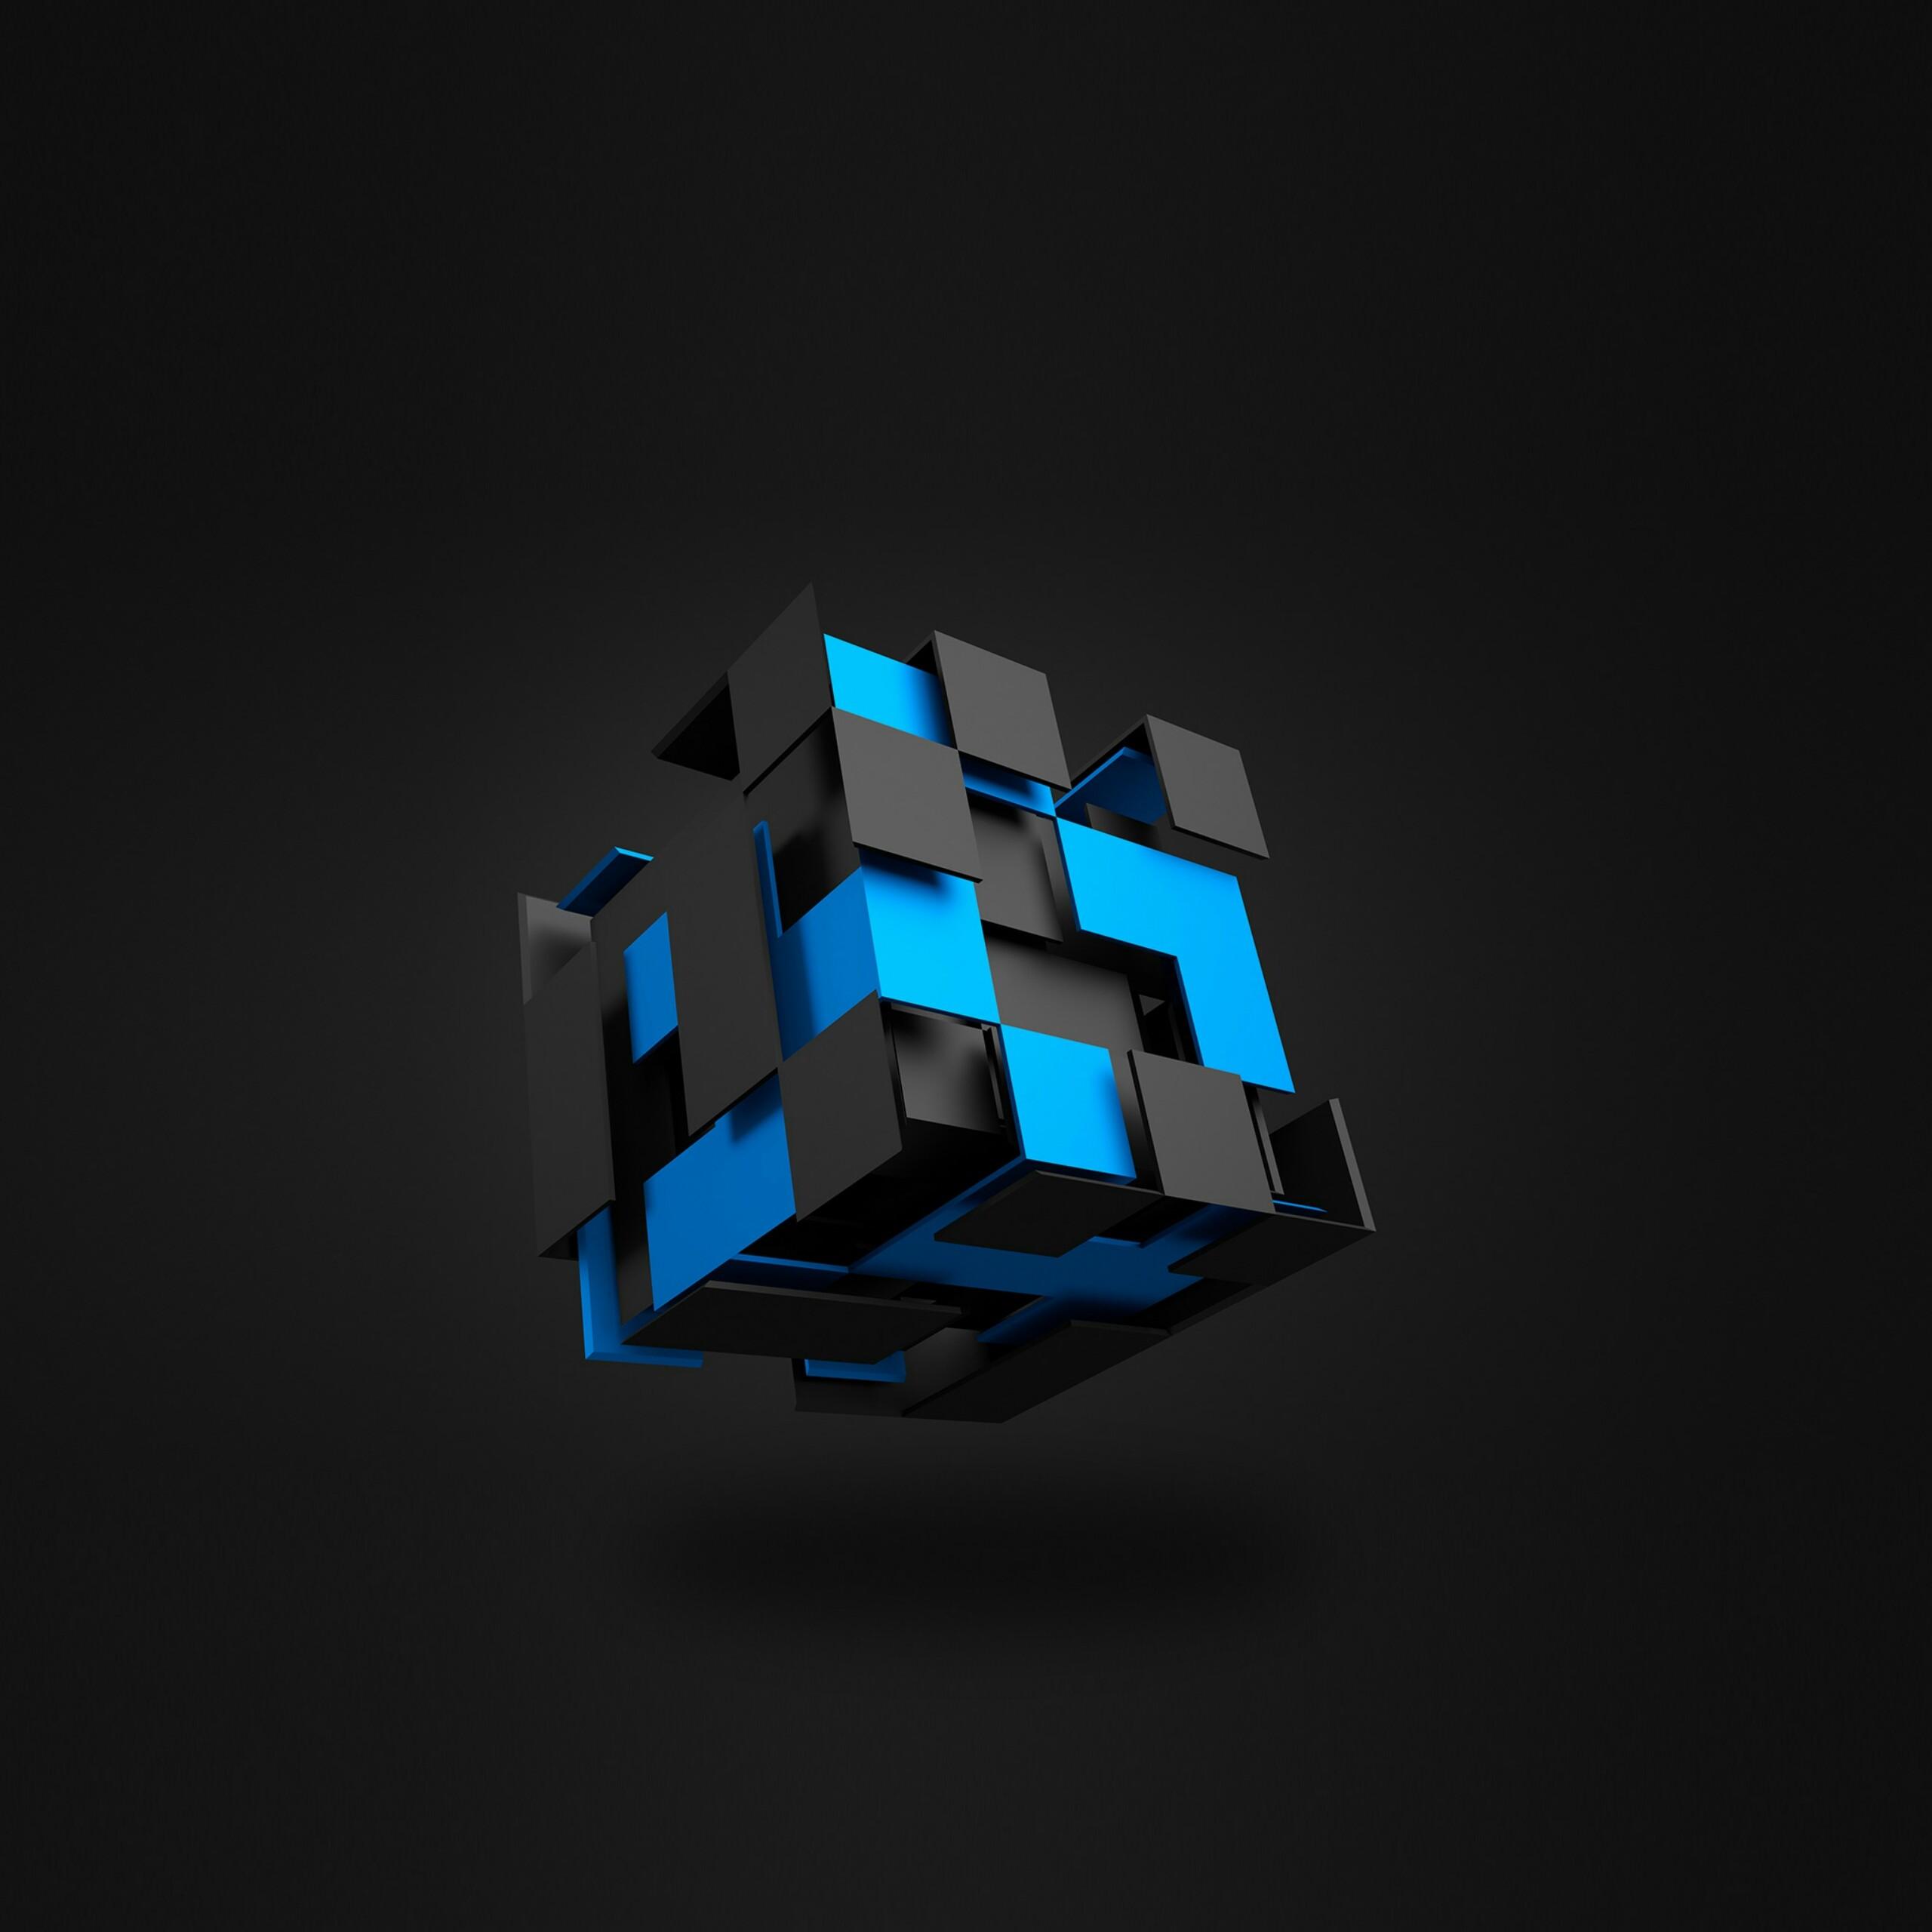 3d Cube Wallpaper Hd Image Num 21